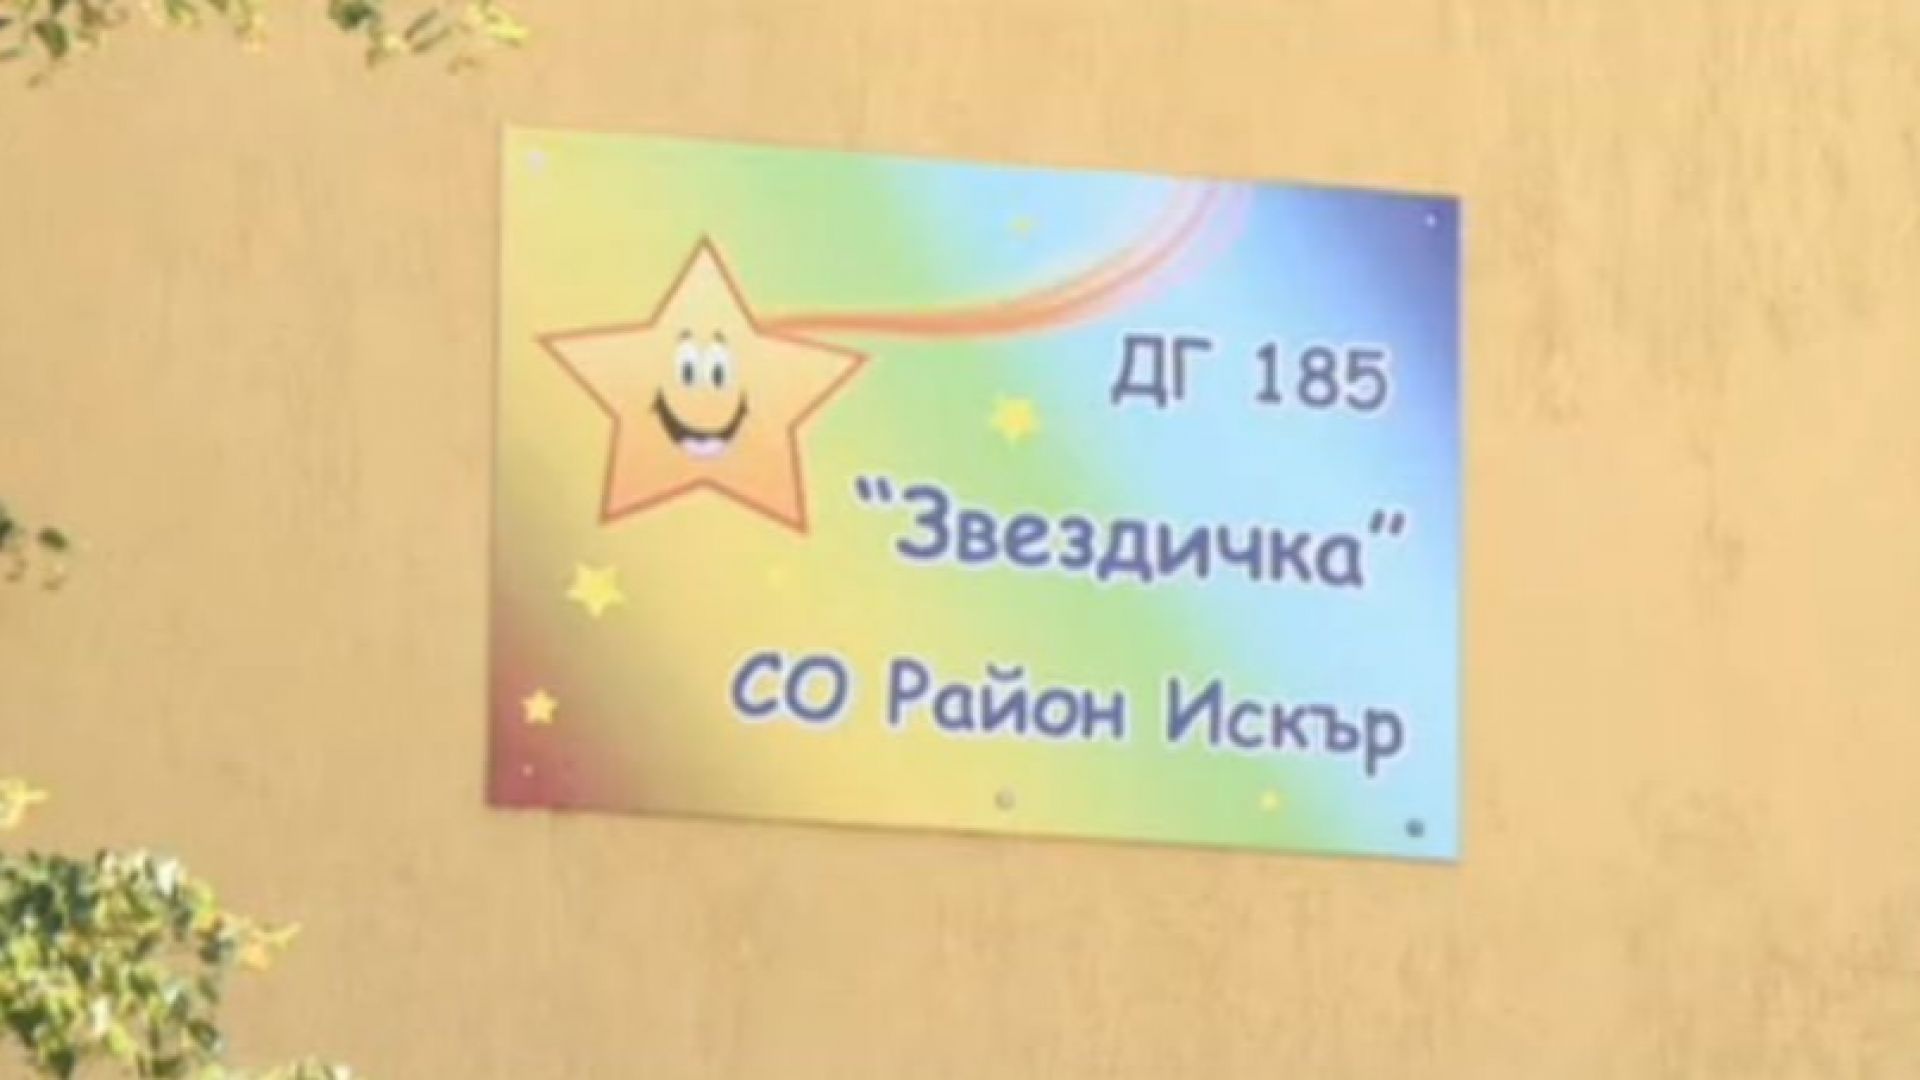 Тестват 200 деца и персонал от детска градина "Звездичка" в "Дружба"